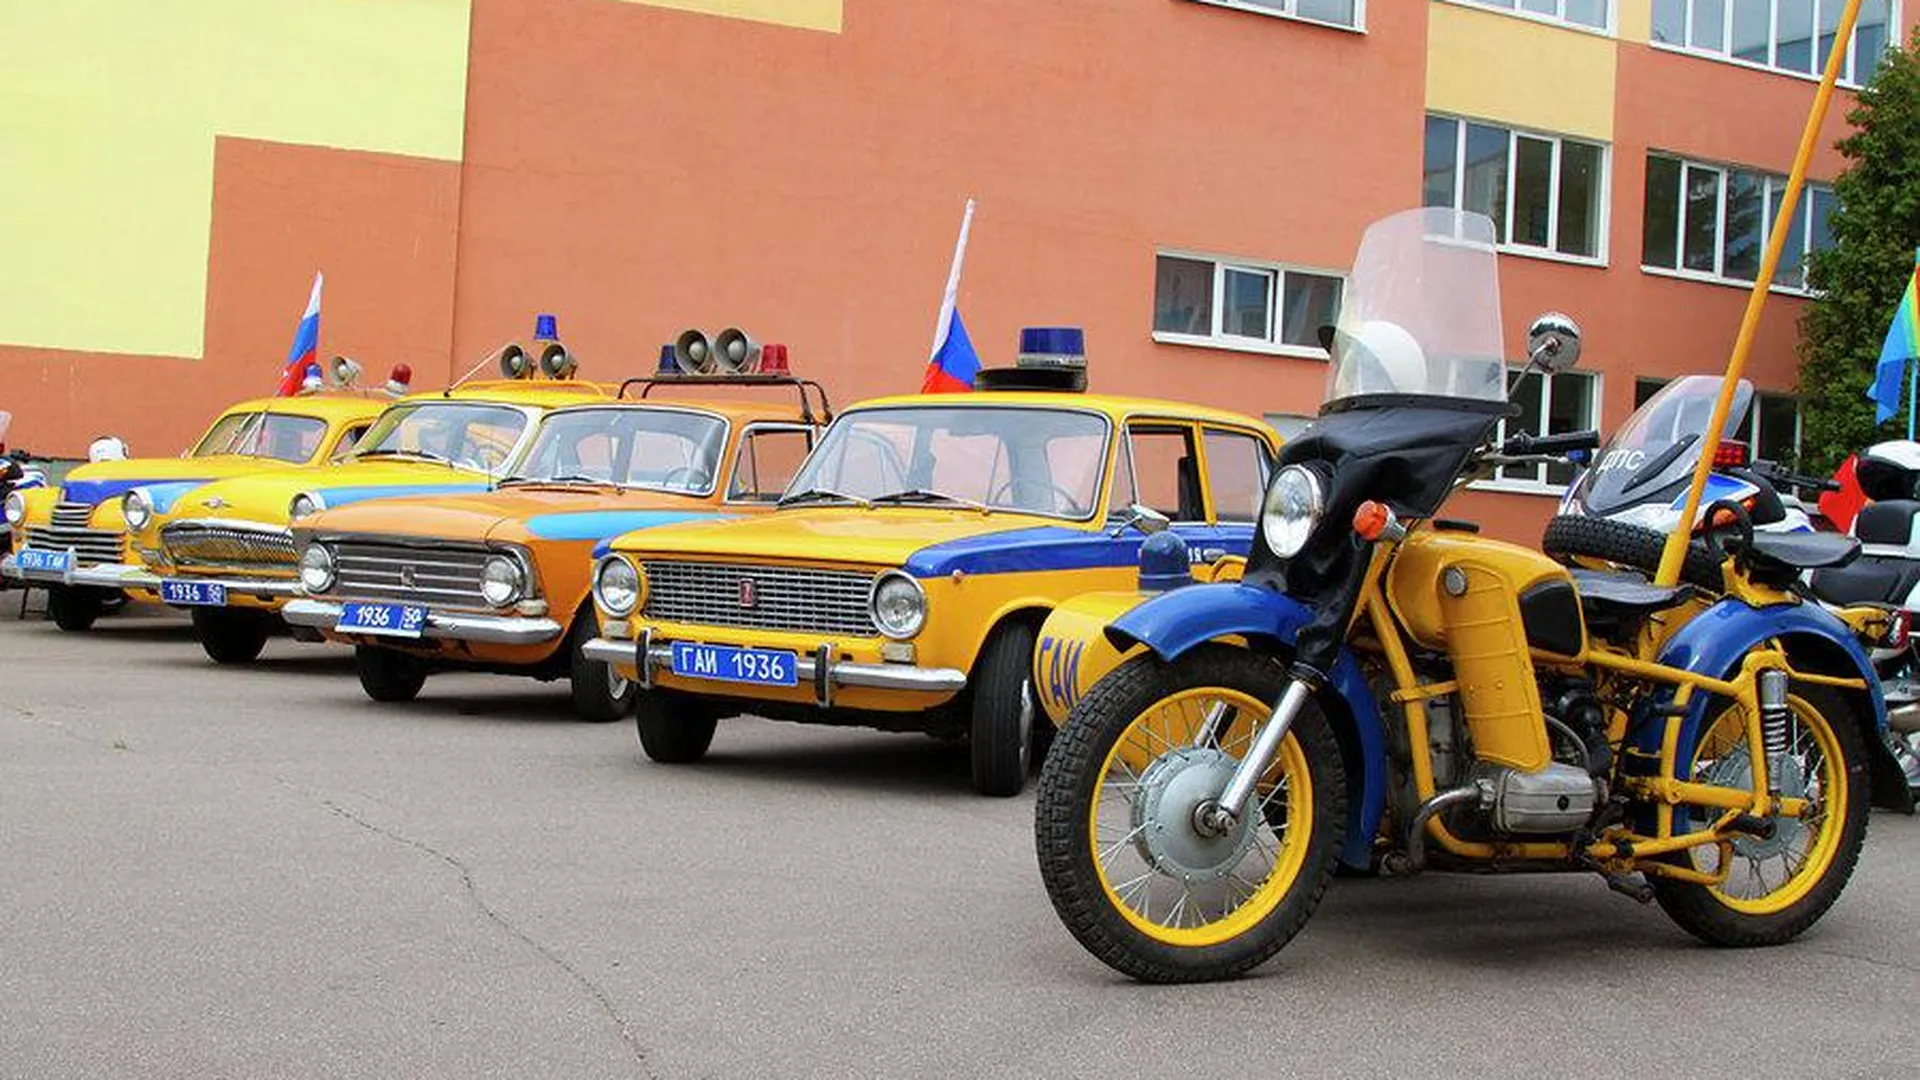 Парад милицейских ретро-автомобилей прошел в Рузском районе